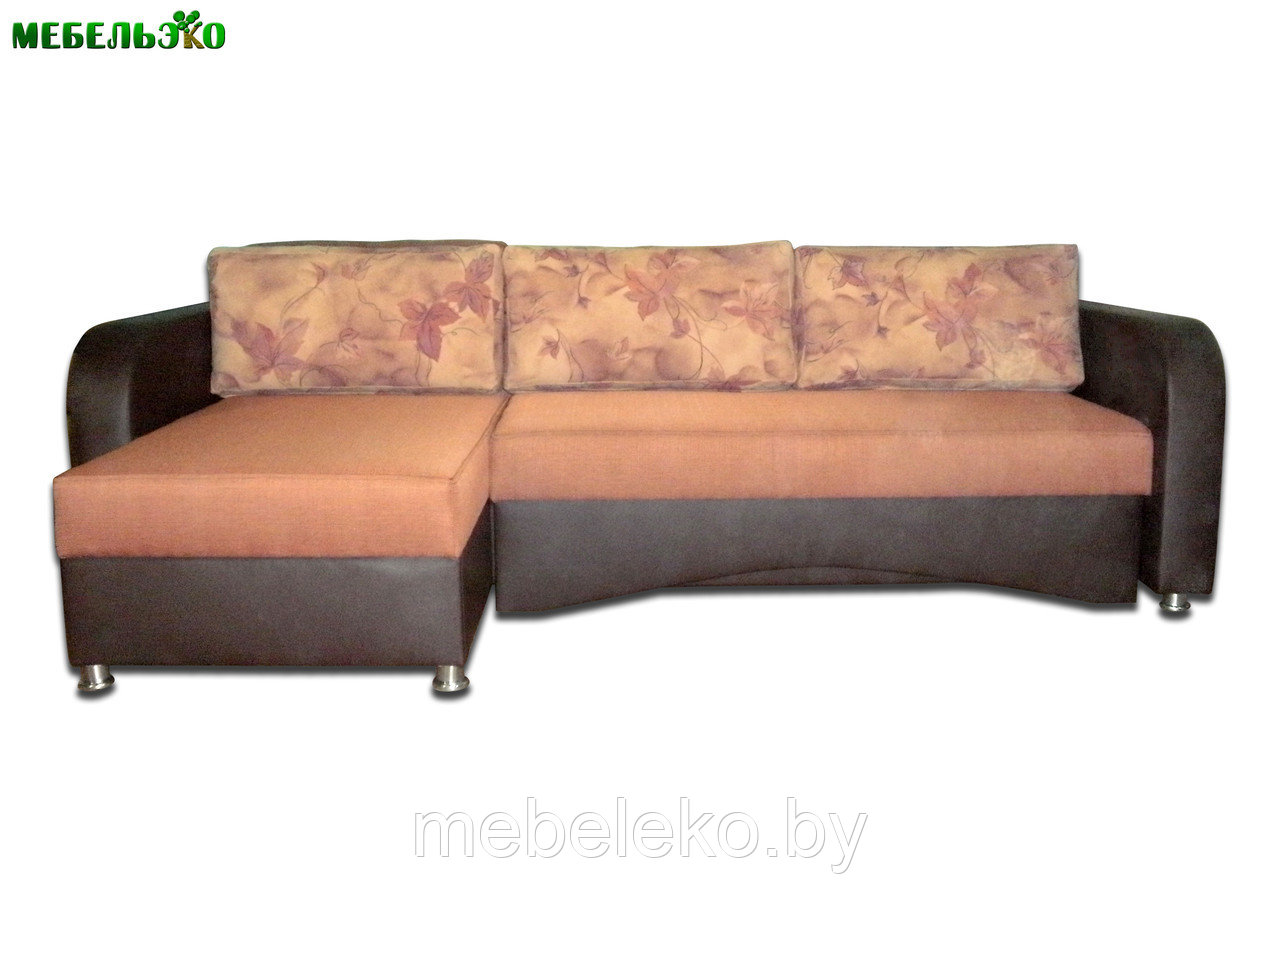 Угловой диван "Диона" коричневый